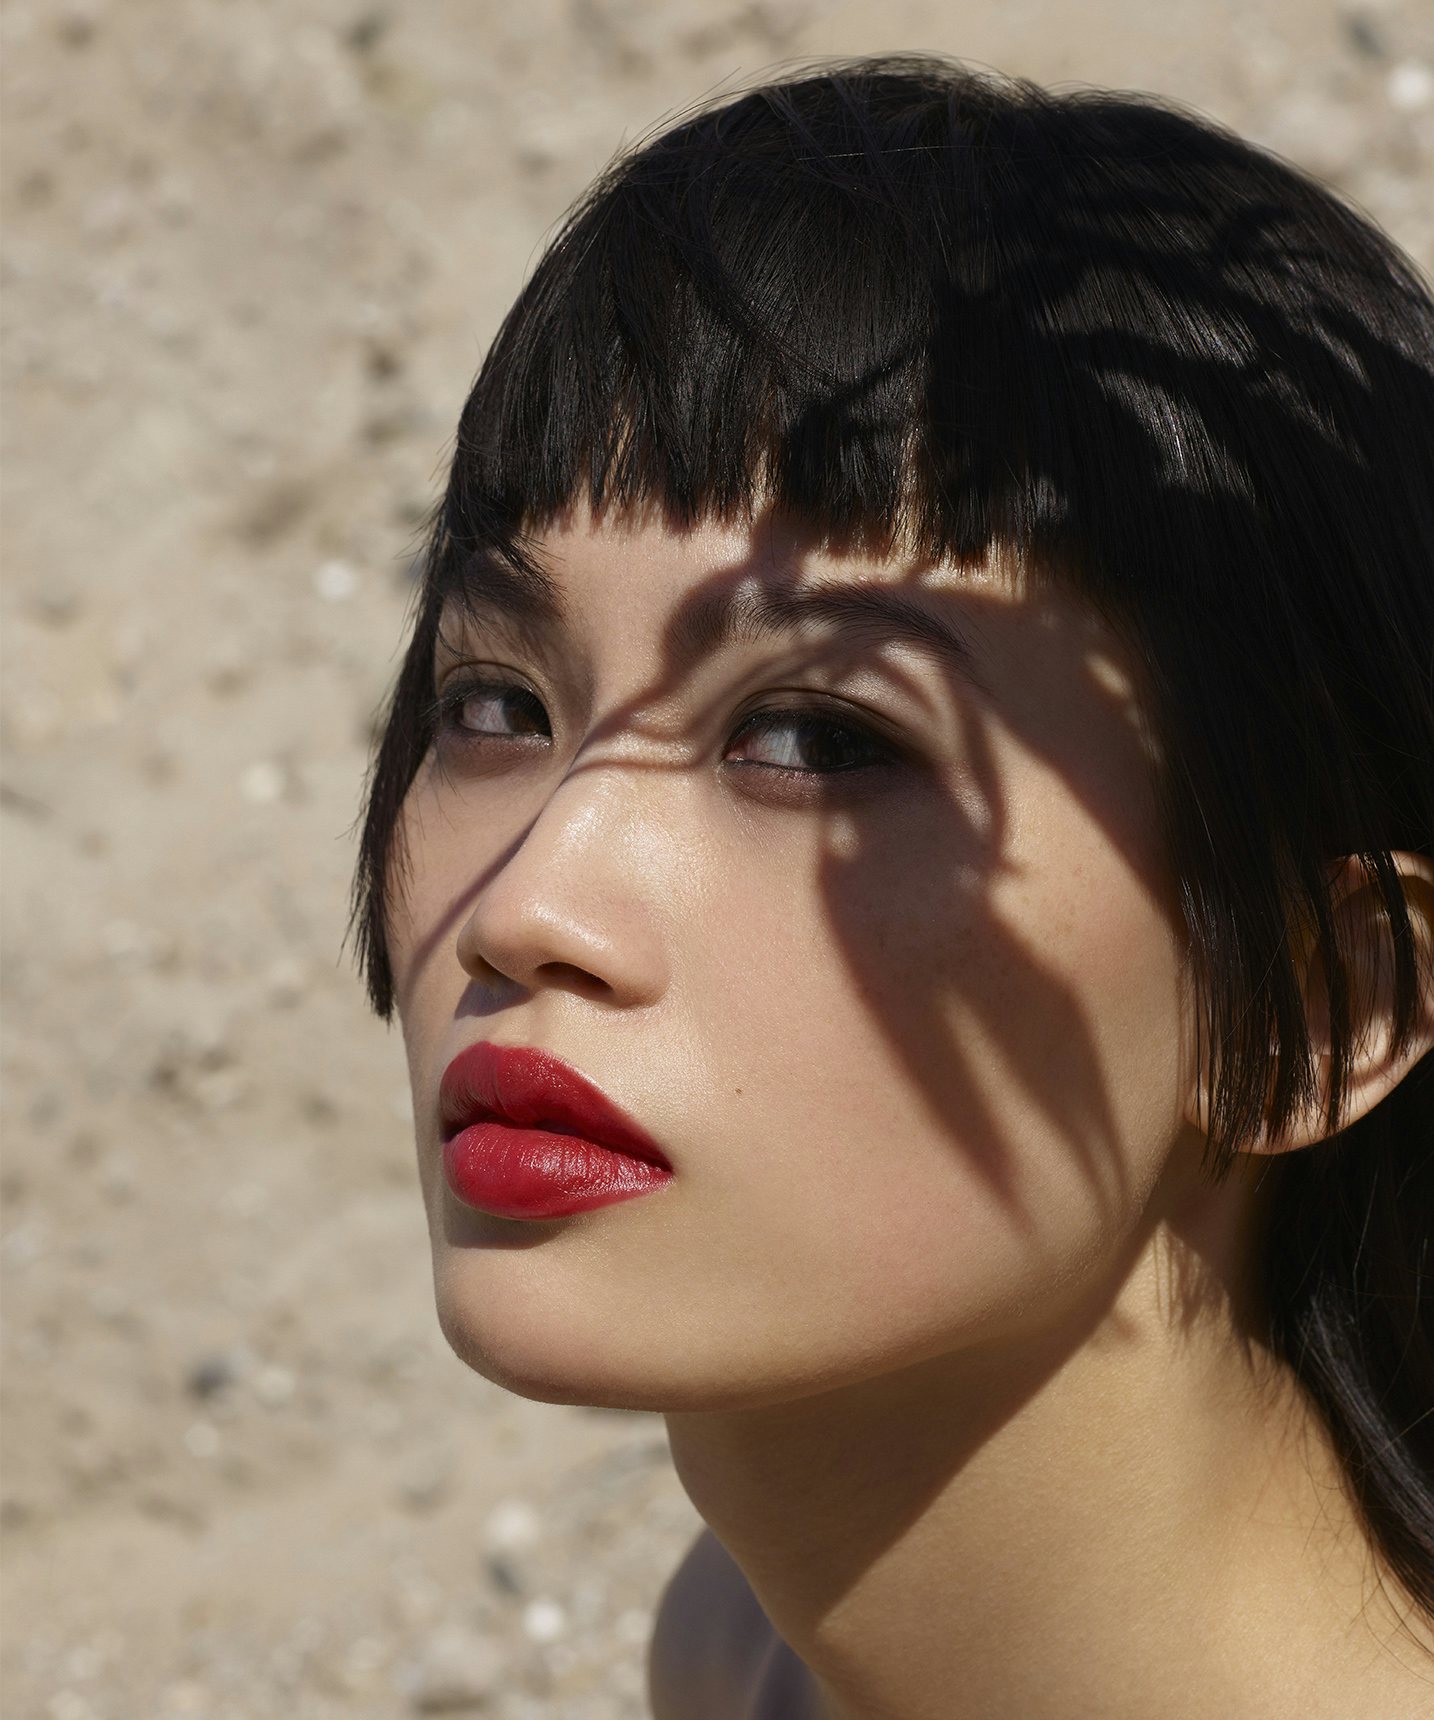 La bouche rouge campagne Viviane Sassen mannequin asiatique portant un rouge à lèvres rouge